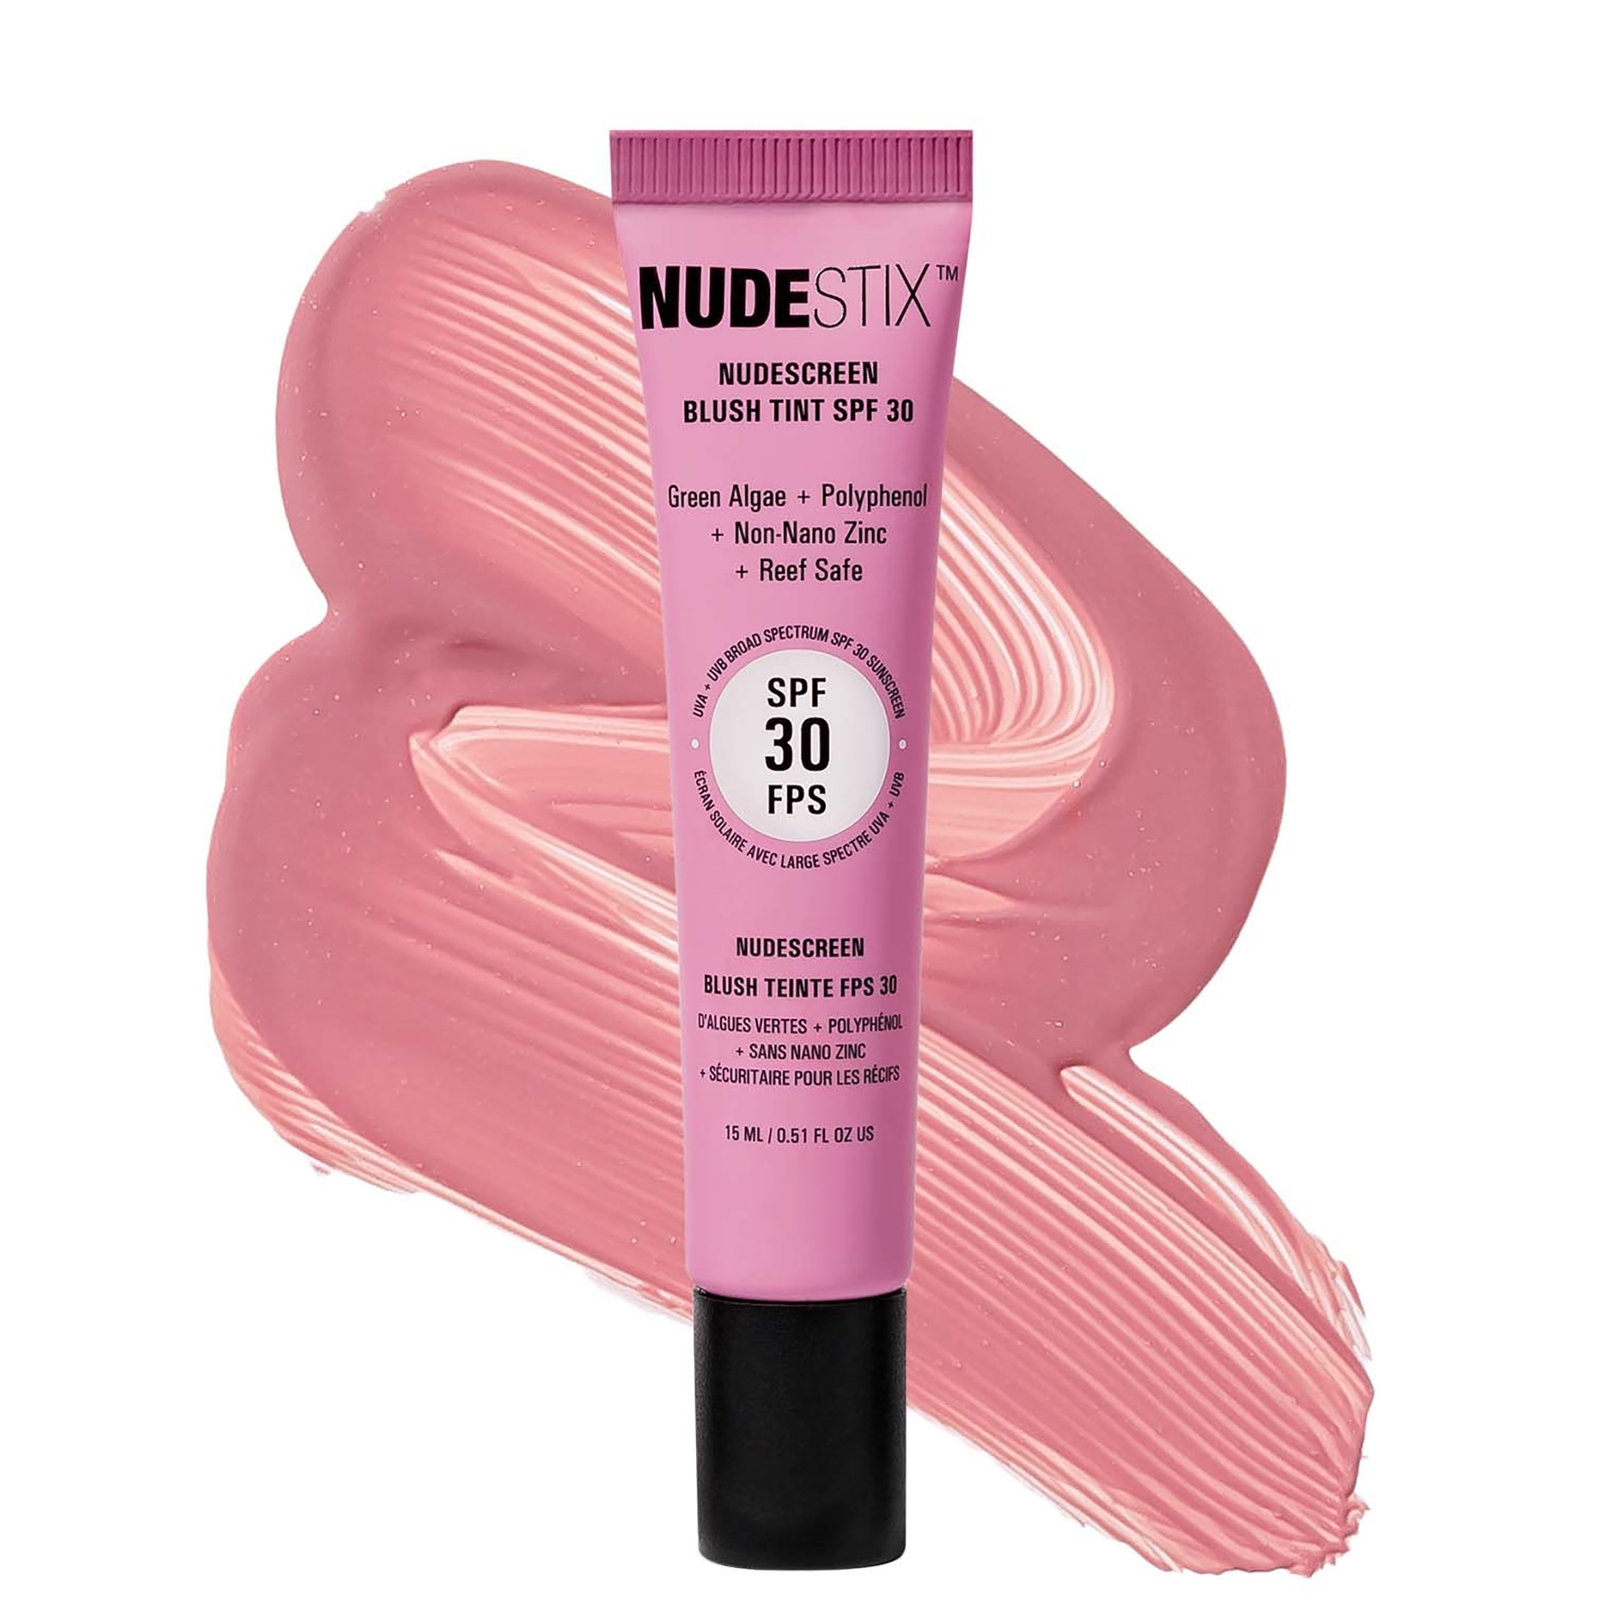 NUDESTIX Nudescreen Blush Tint SPF 30 15ml (Various Shades) - Sunset Rose